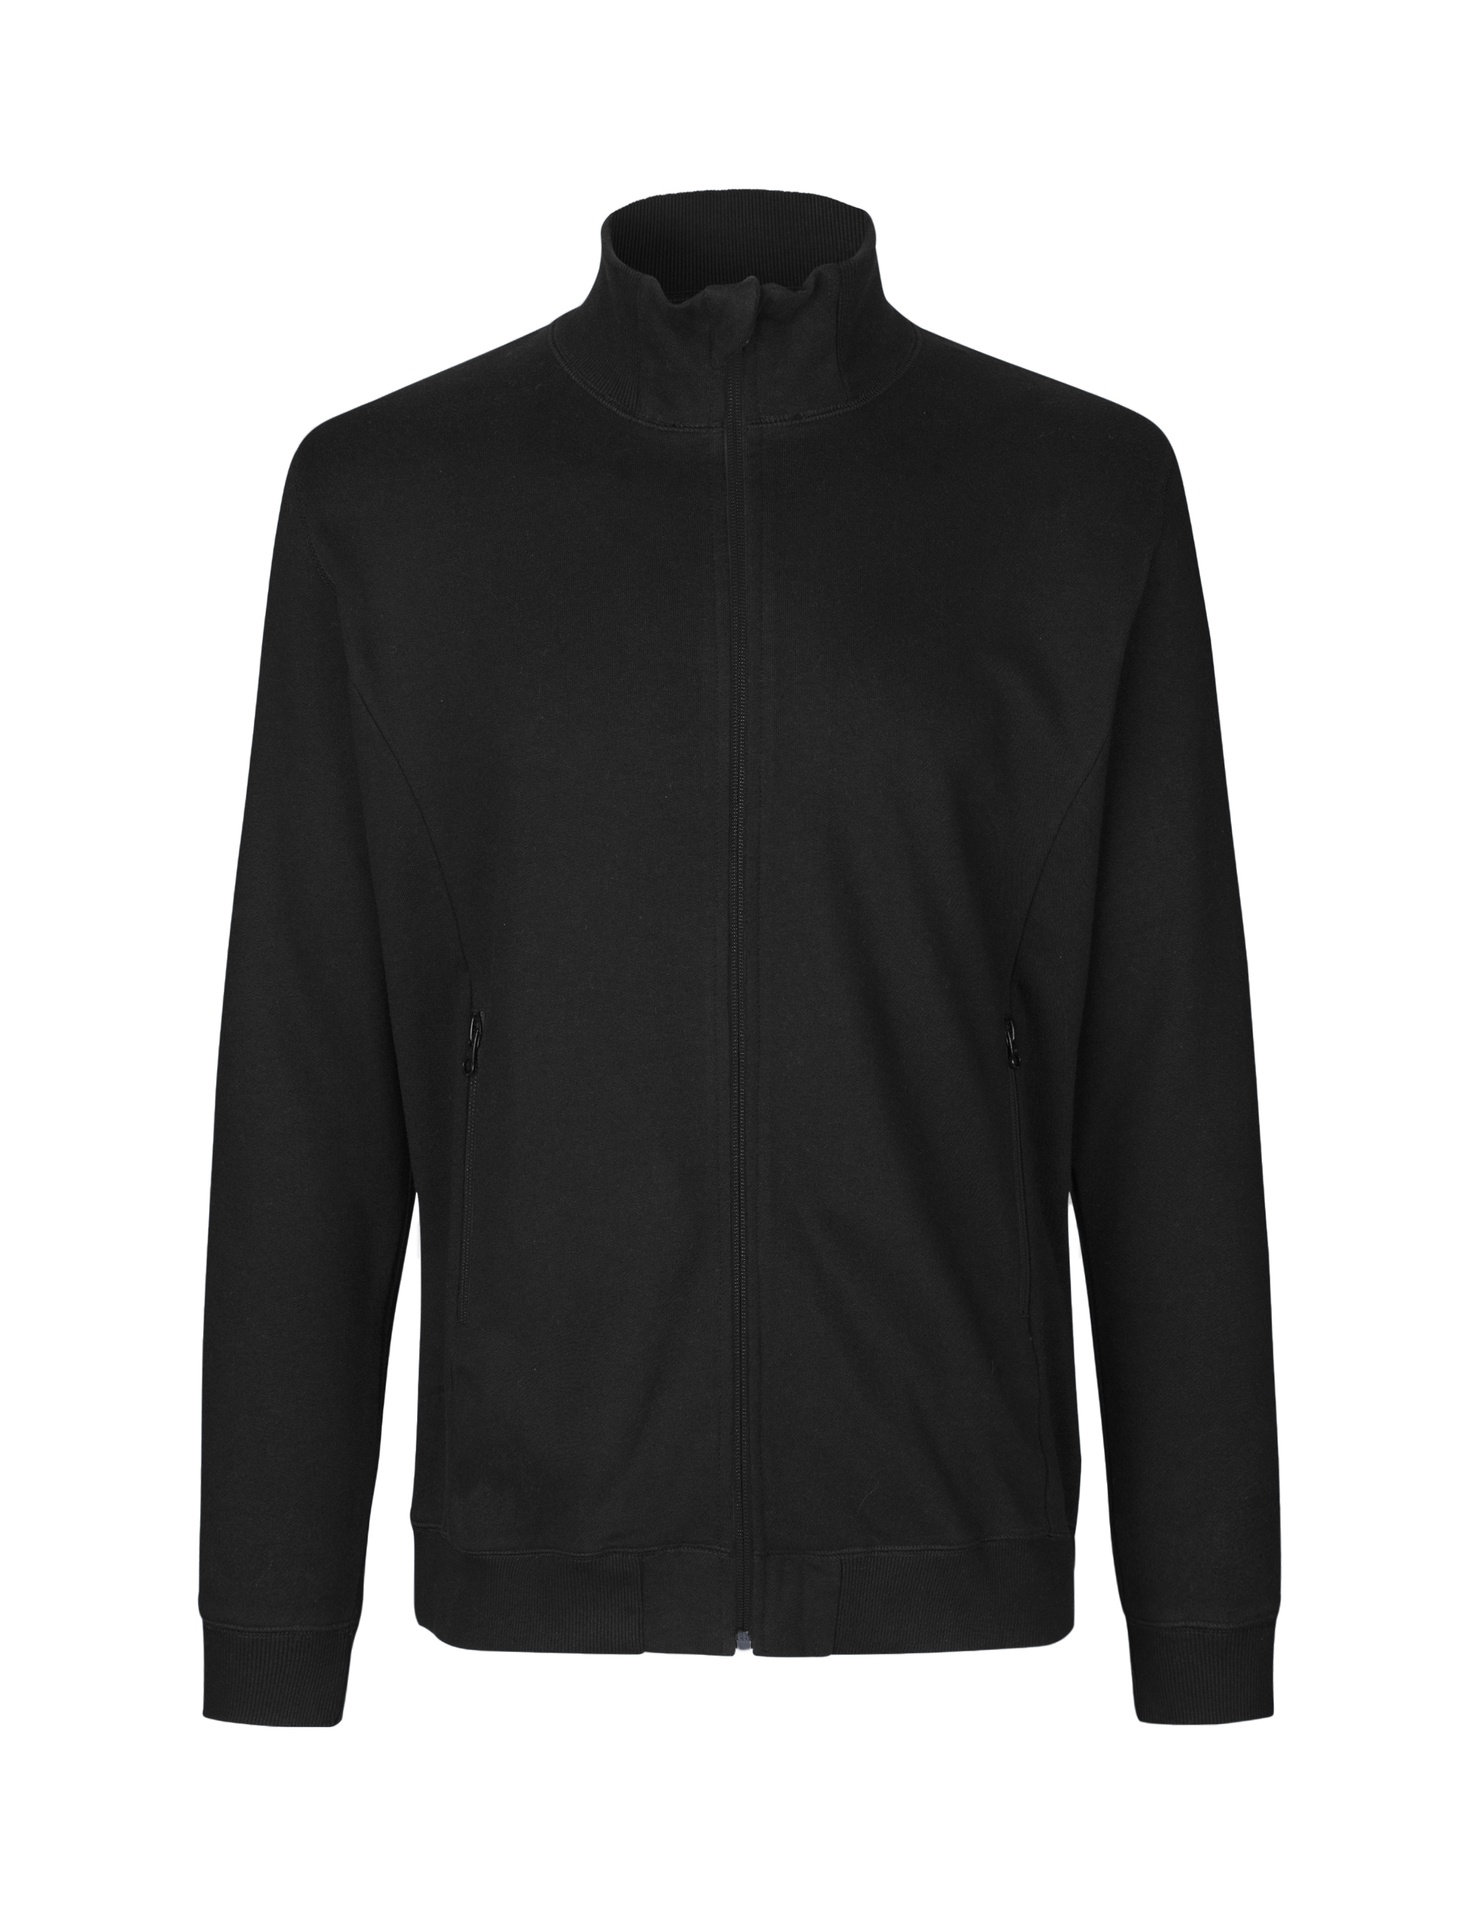 [PR/03635] Unisex High Neck Jacket (Black 03, 3XL)